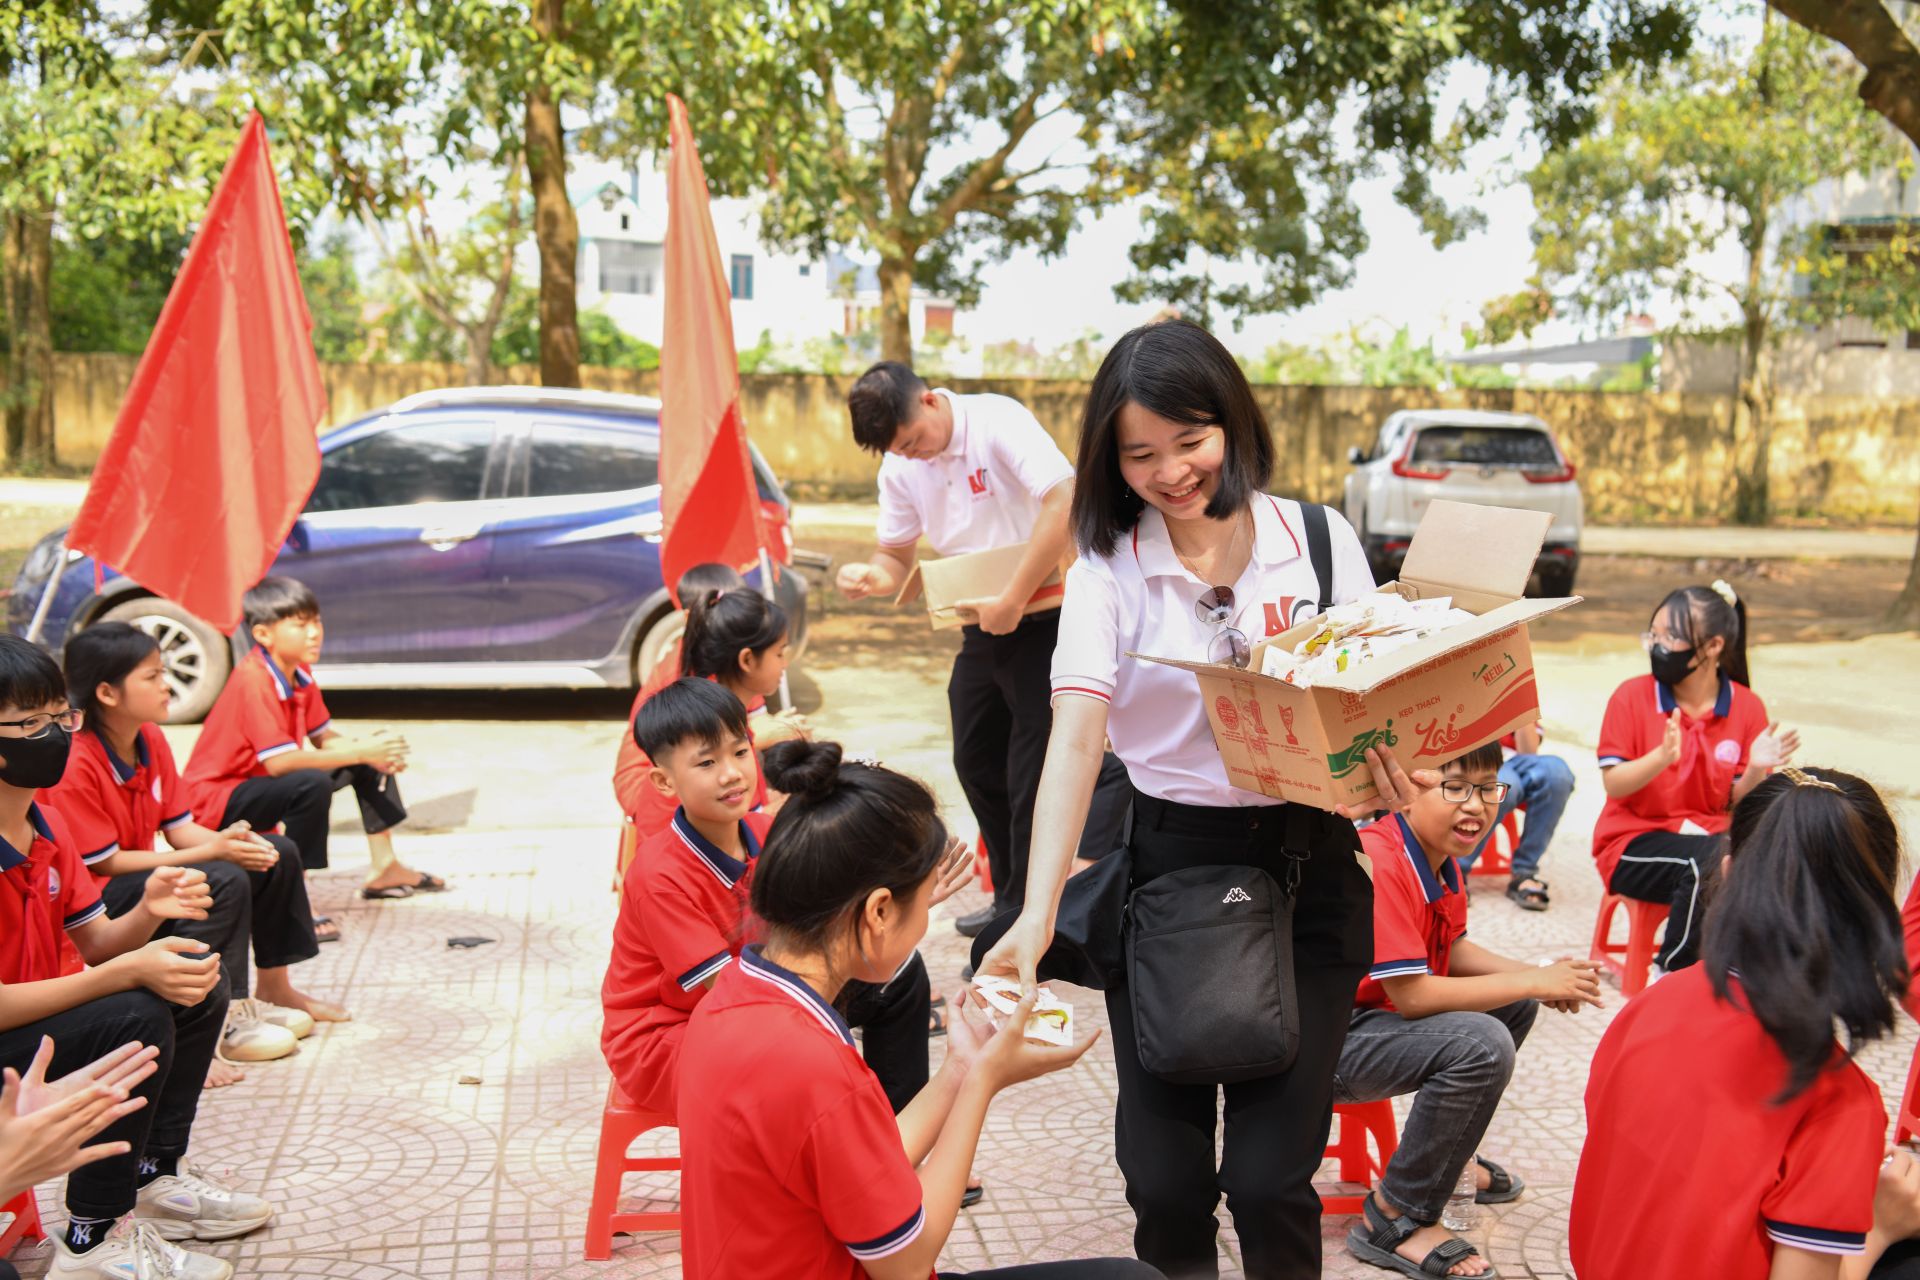 Cán bộ, học viên trường Học viên Tư pháp trao quà cho học sinh trường Thiệu Khánh.